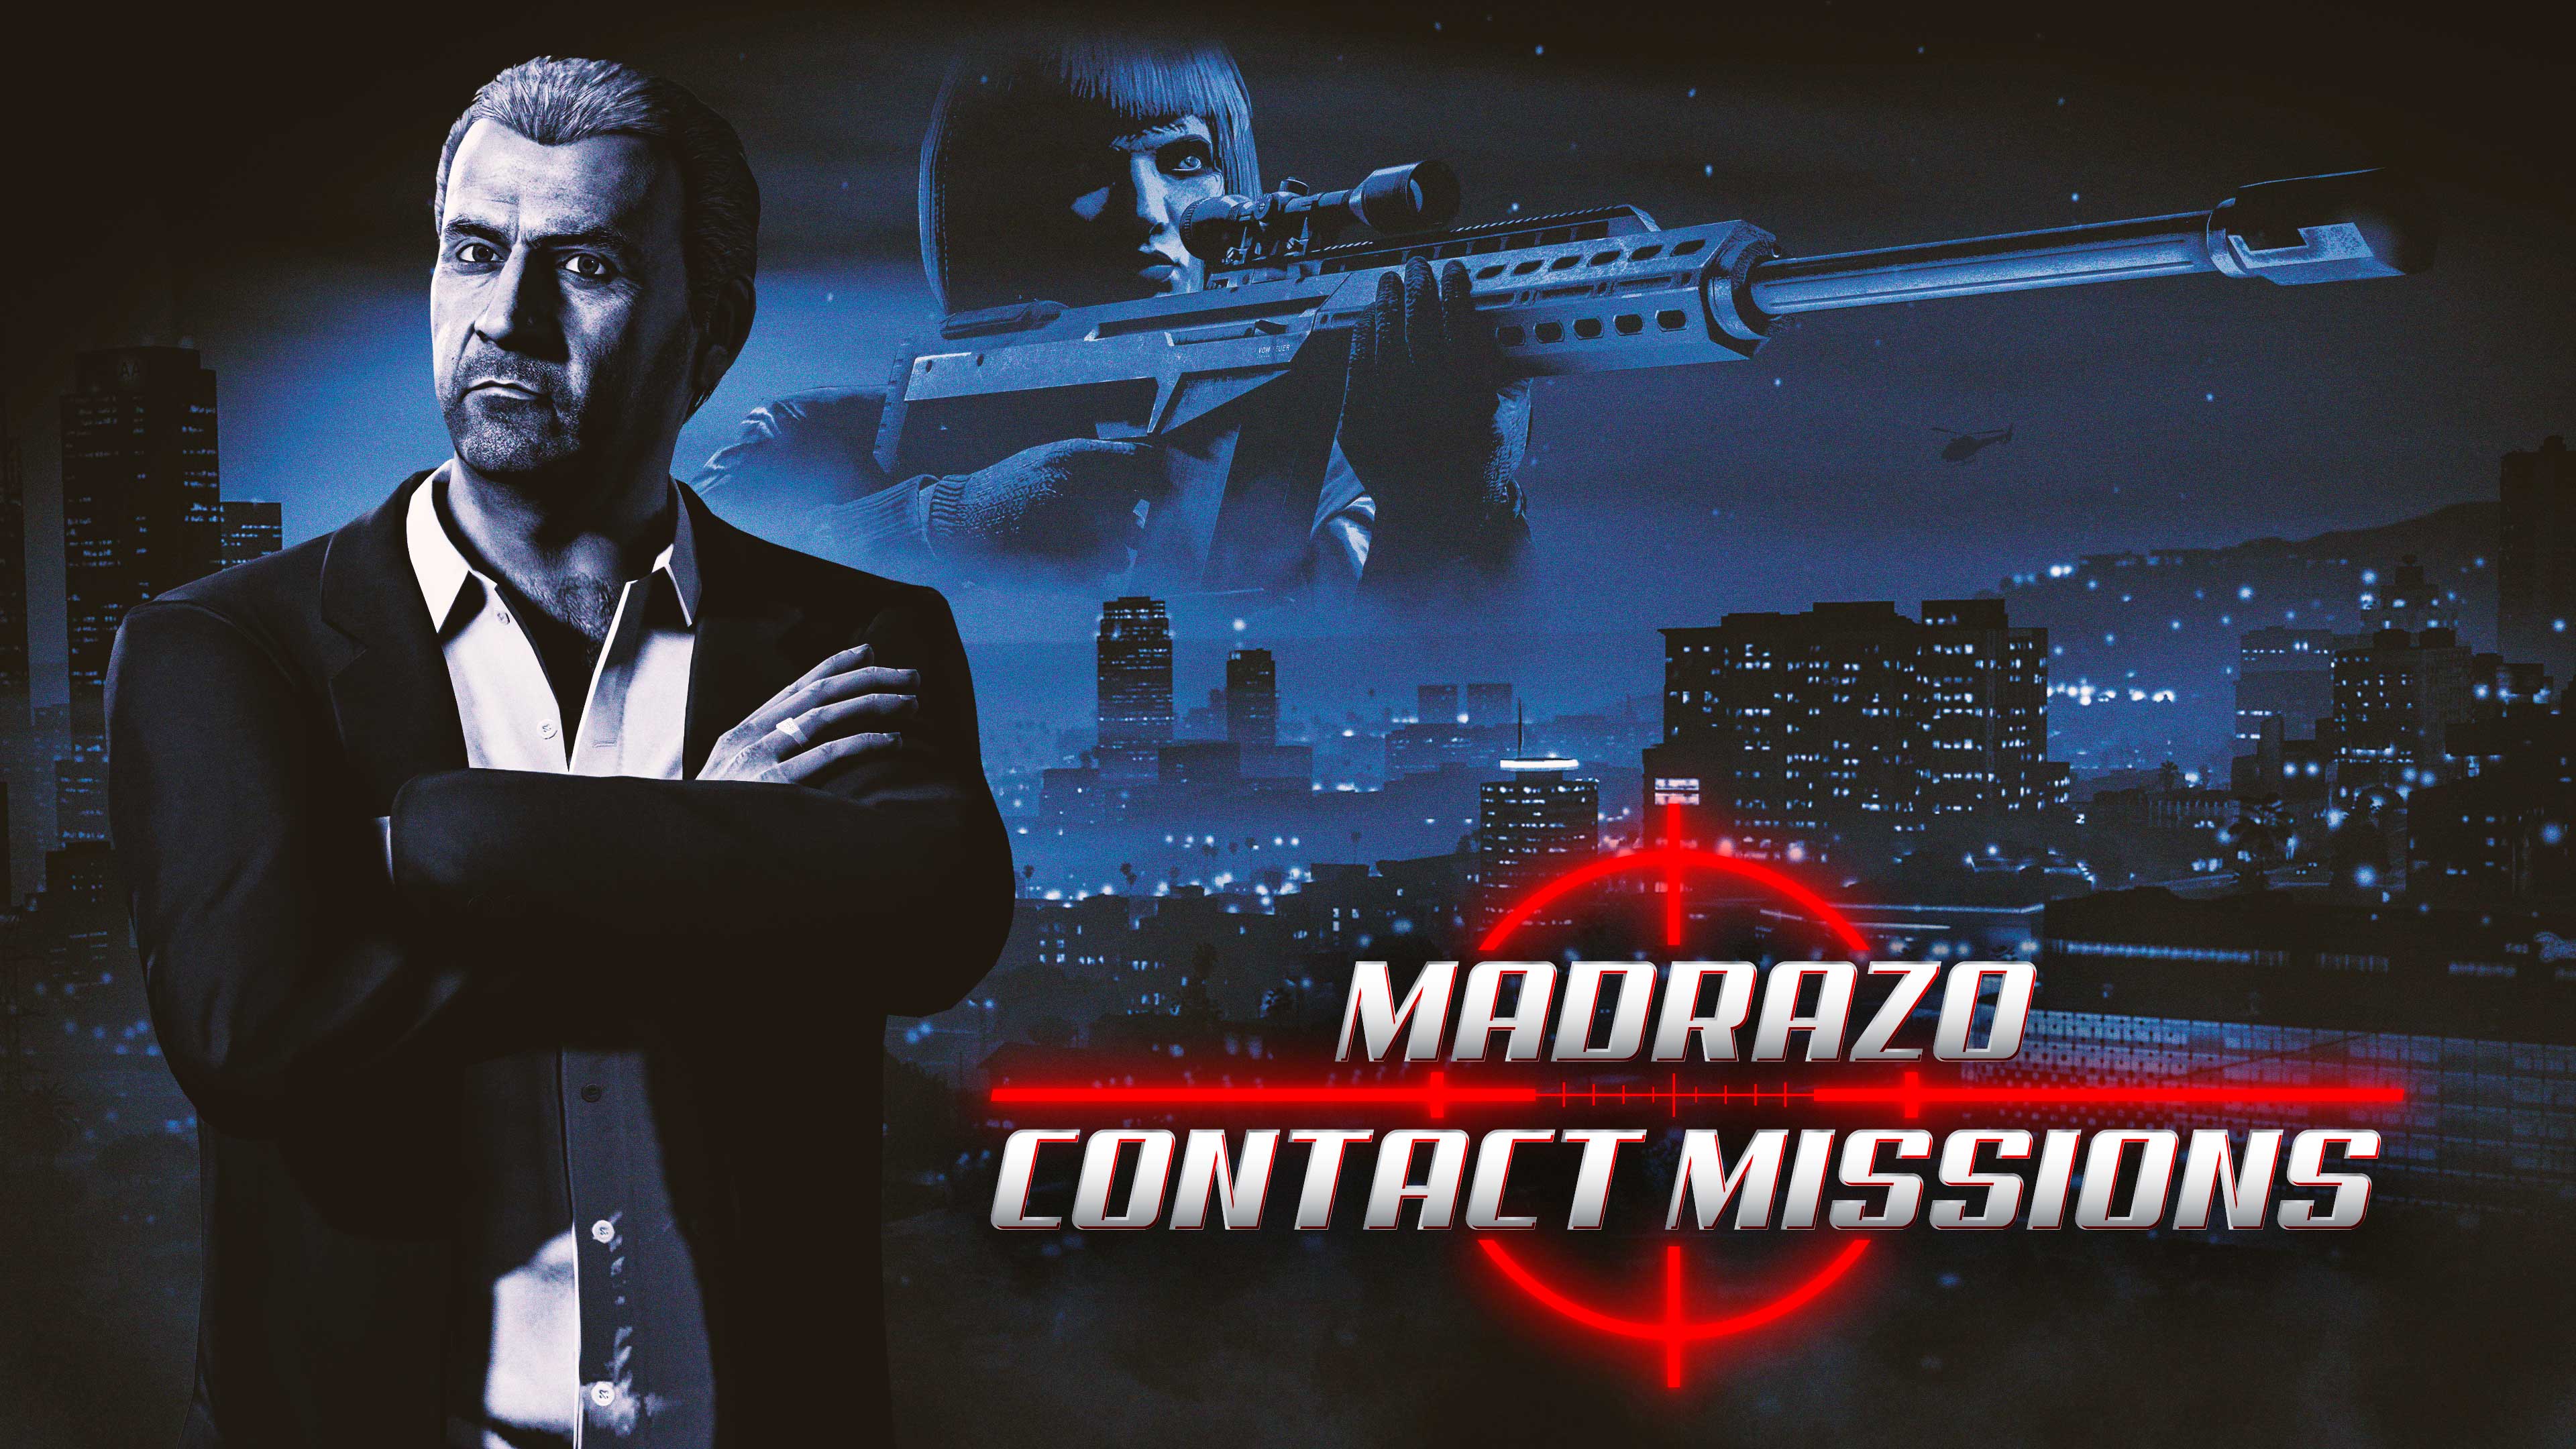 Poster de misiones de contacto de Madrazo